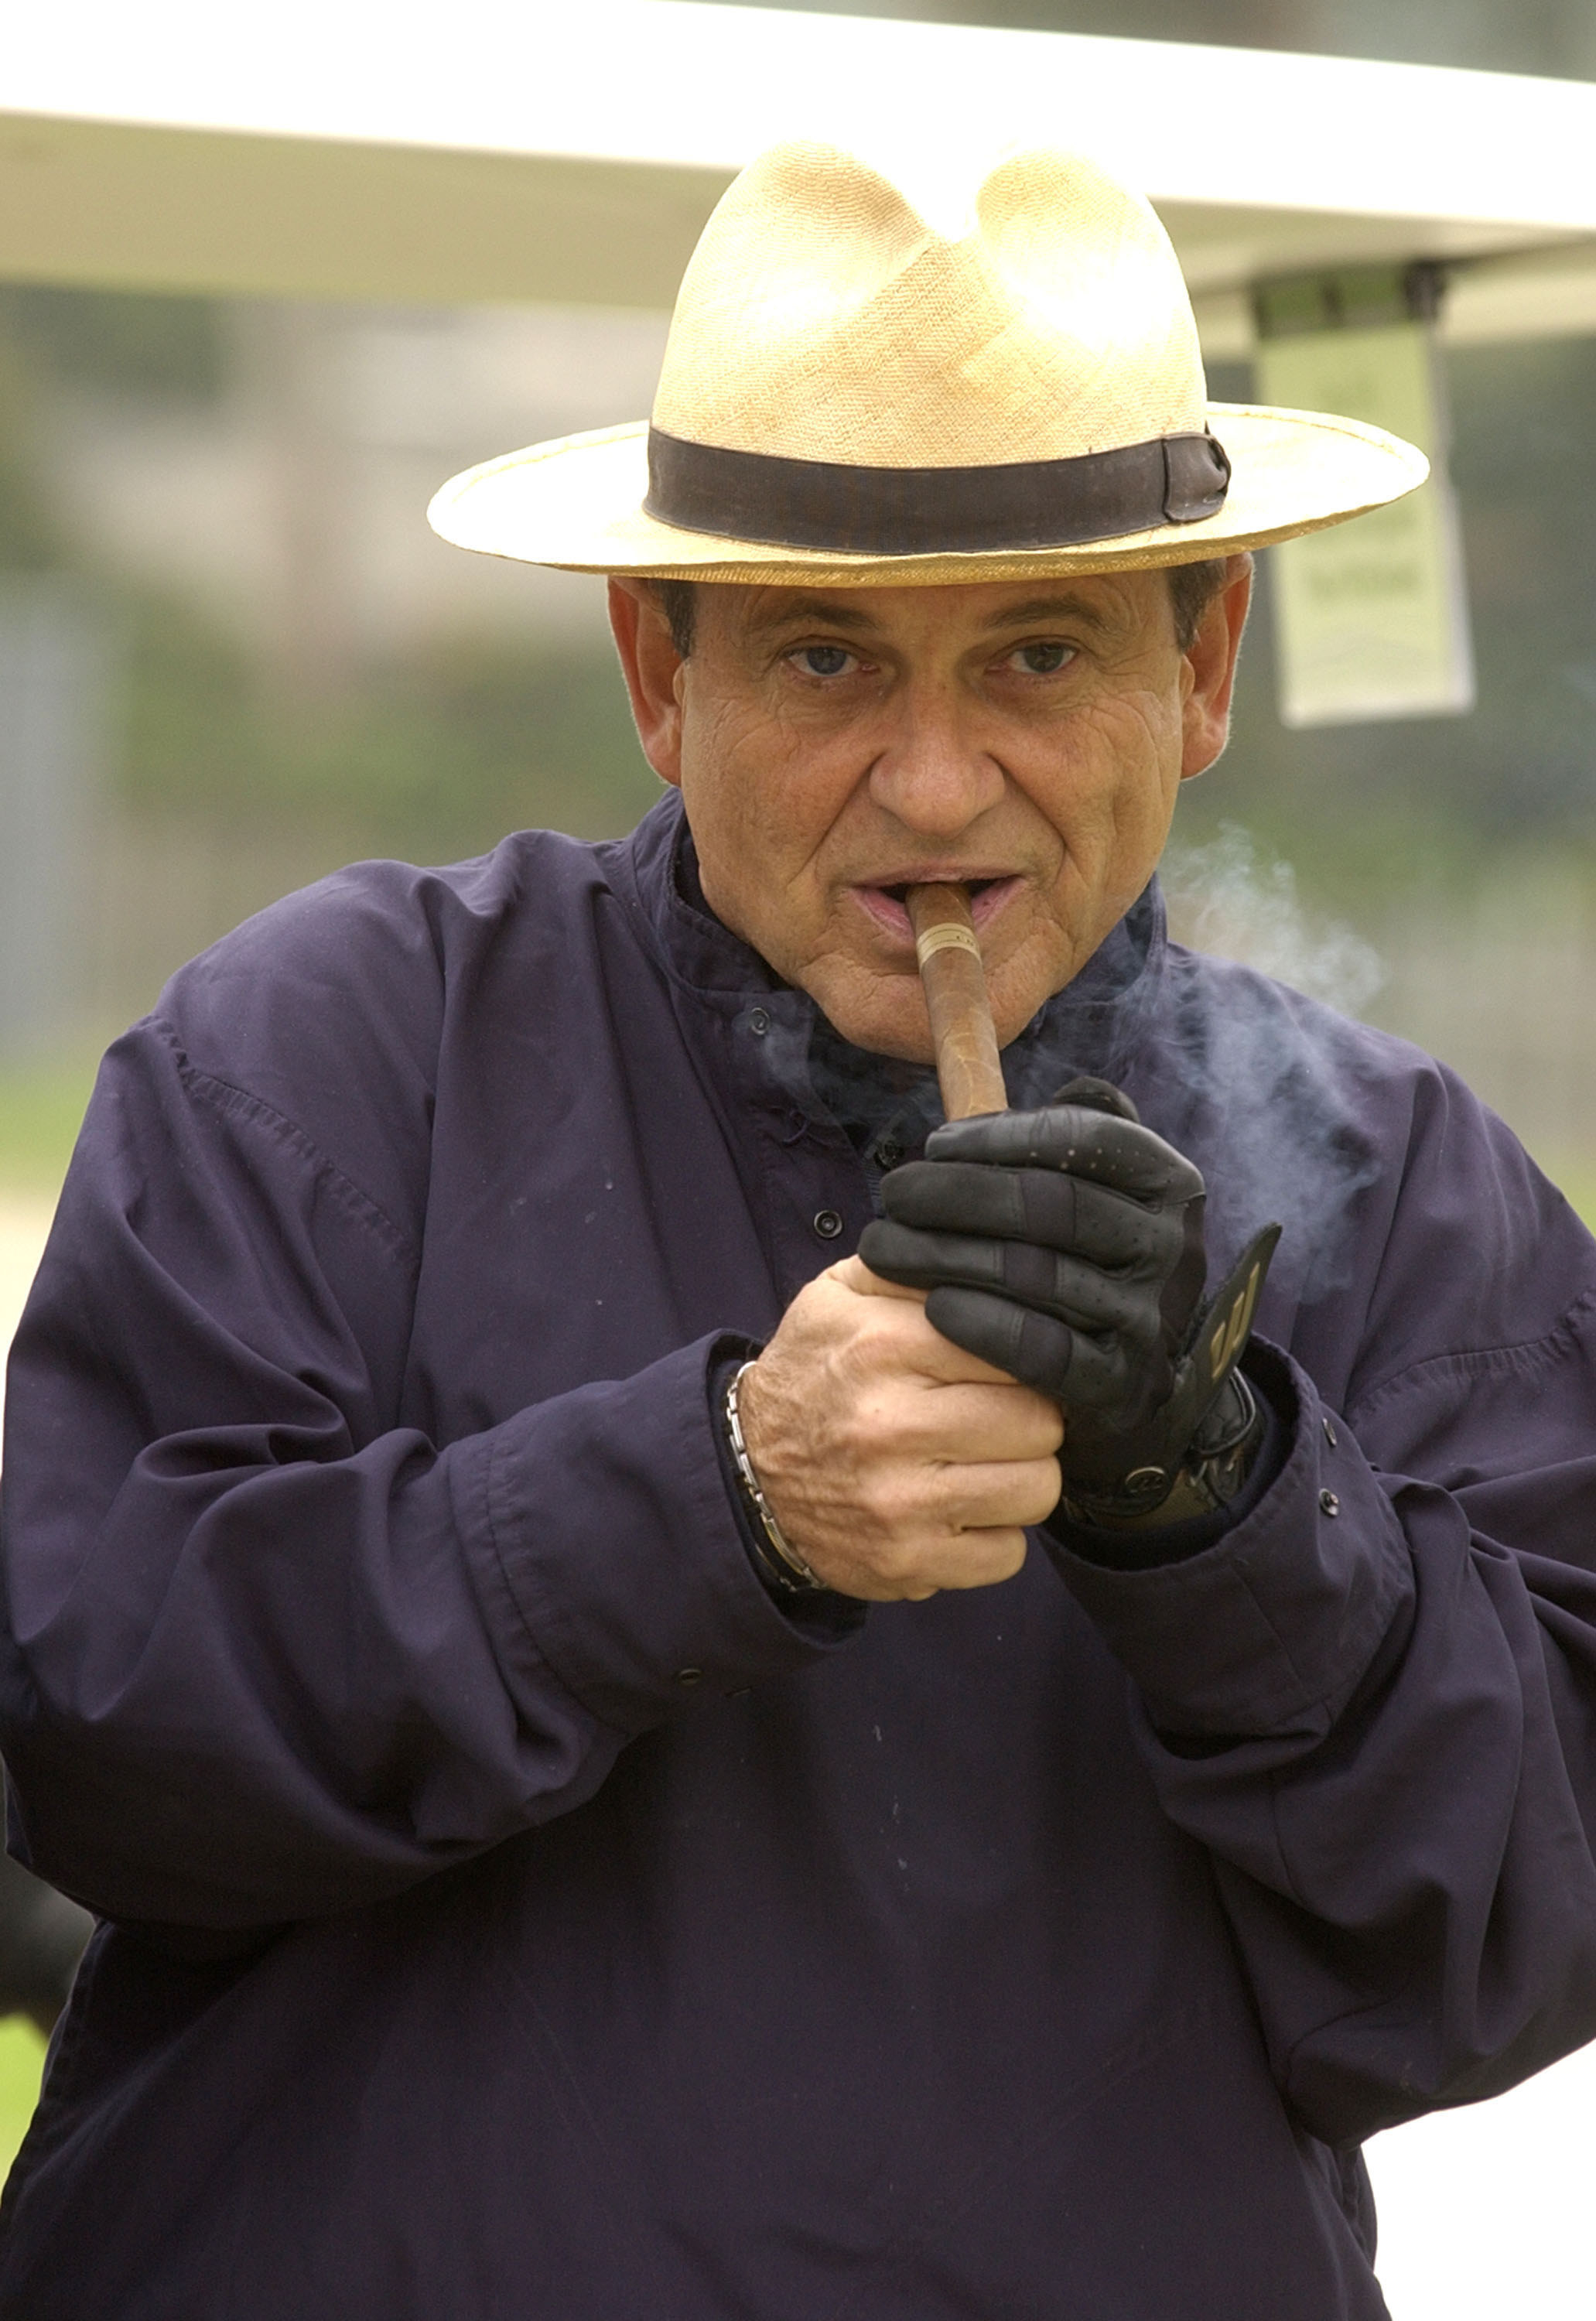 Joe Pesci lighting and smoking a cigar